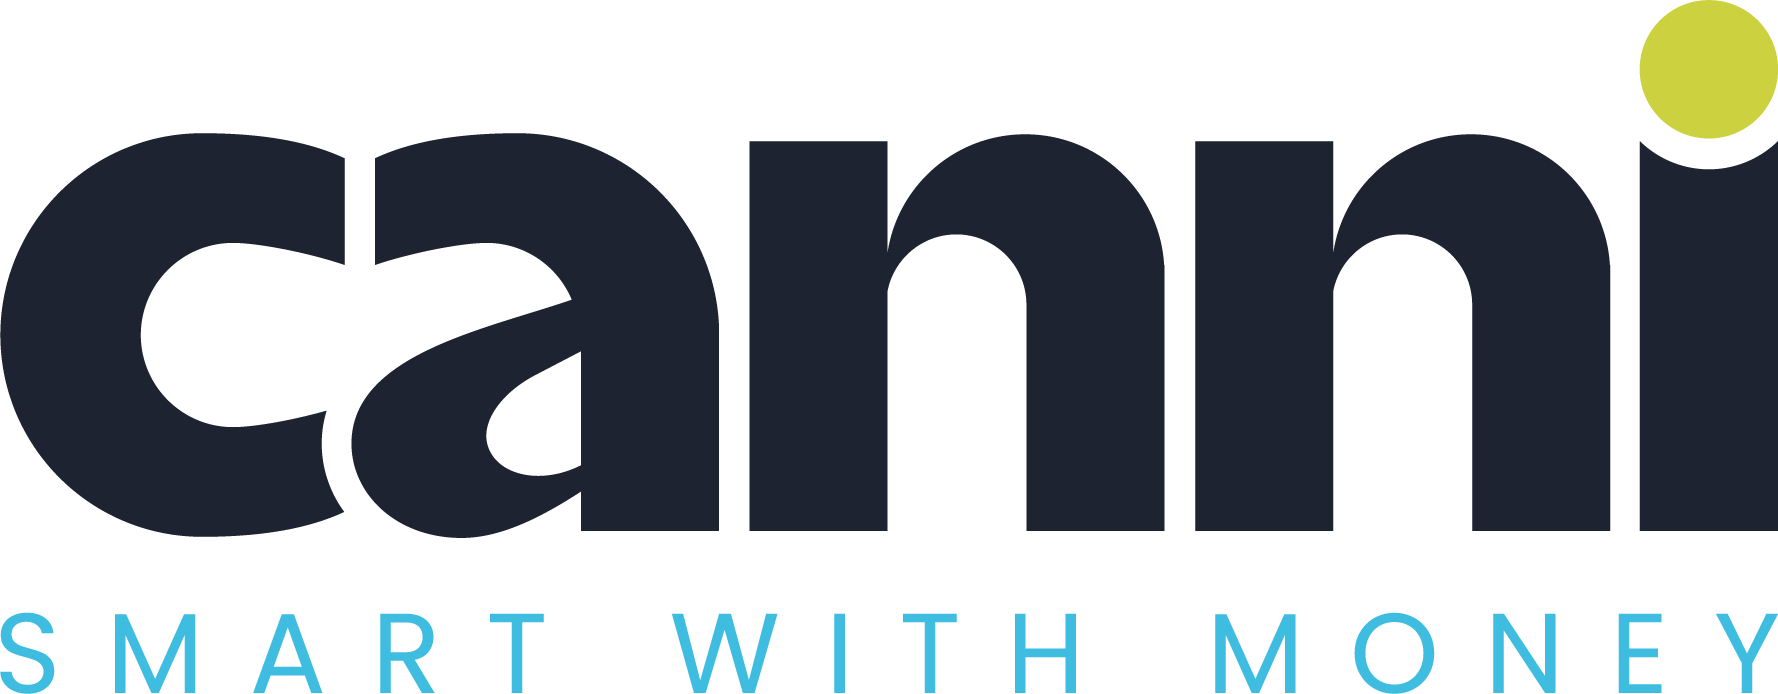 Canni Money Logo